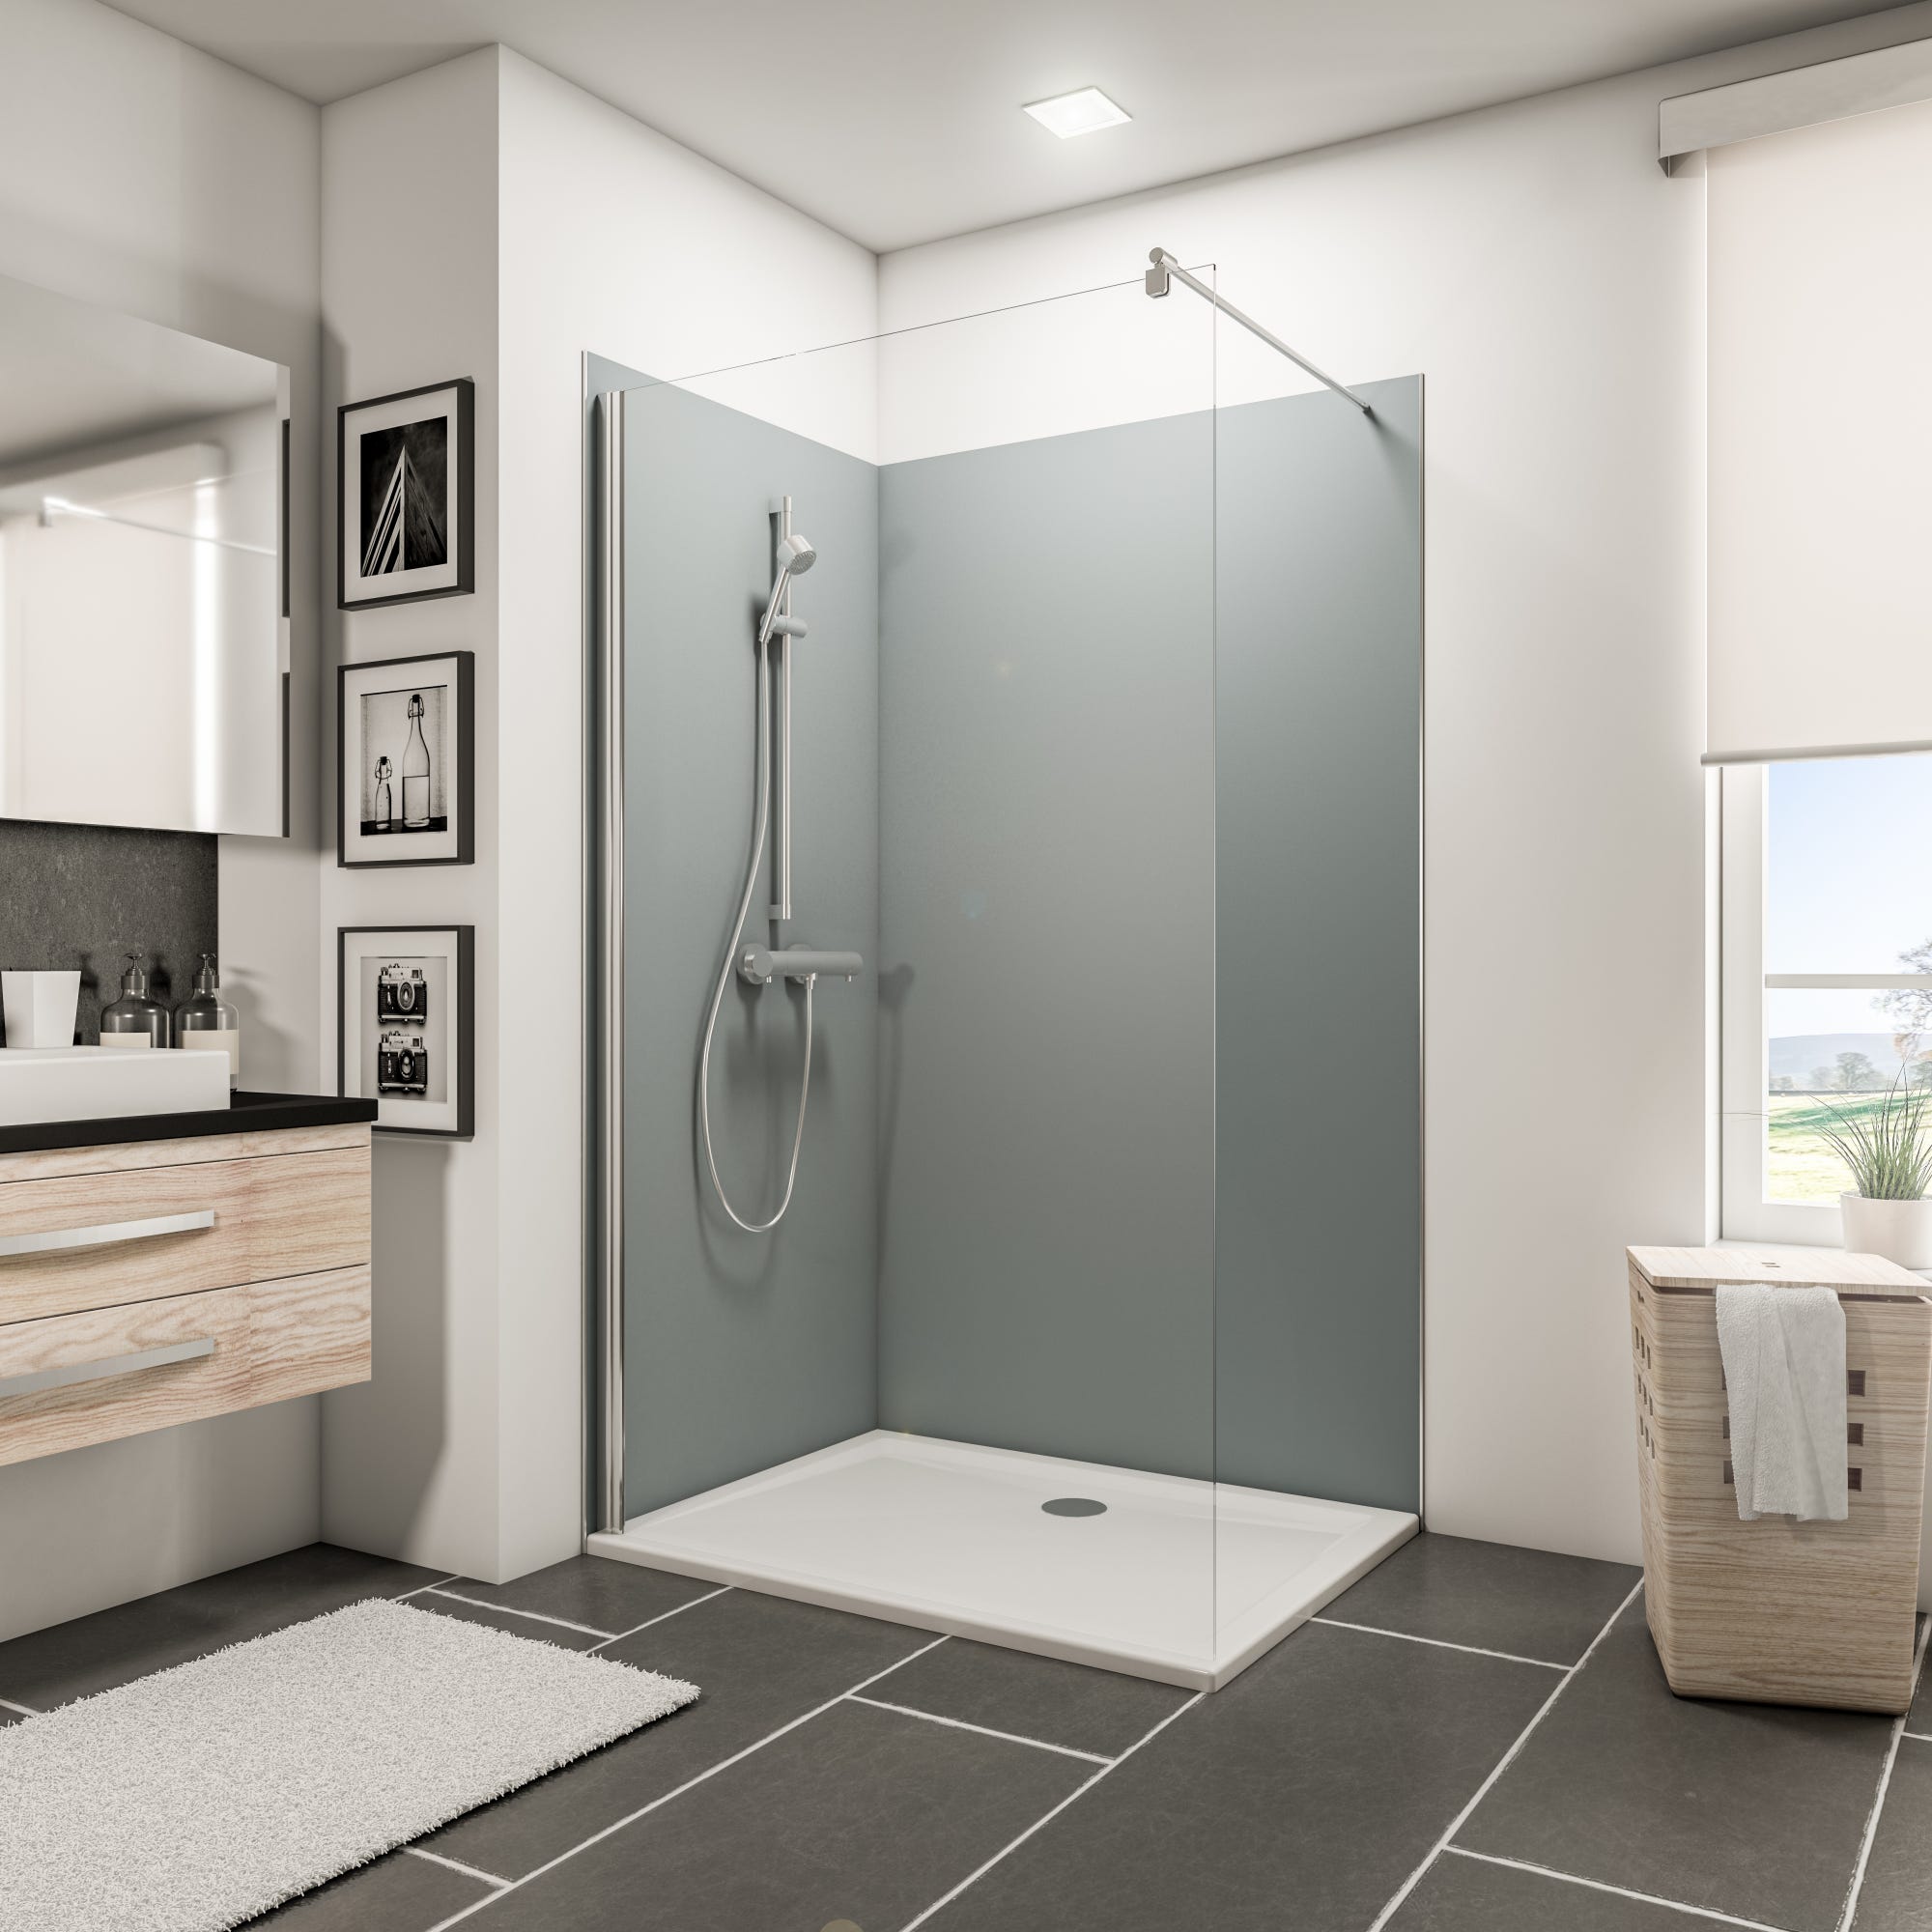 Schulte Pack de 2 panneaux muraux 90 x 210 cm + 120 x 210 cm + 3 profilés Gris argenté, revêtement pour douche et salle de bains, DécoDesign COULEUR 0